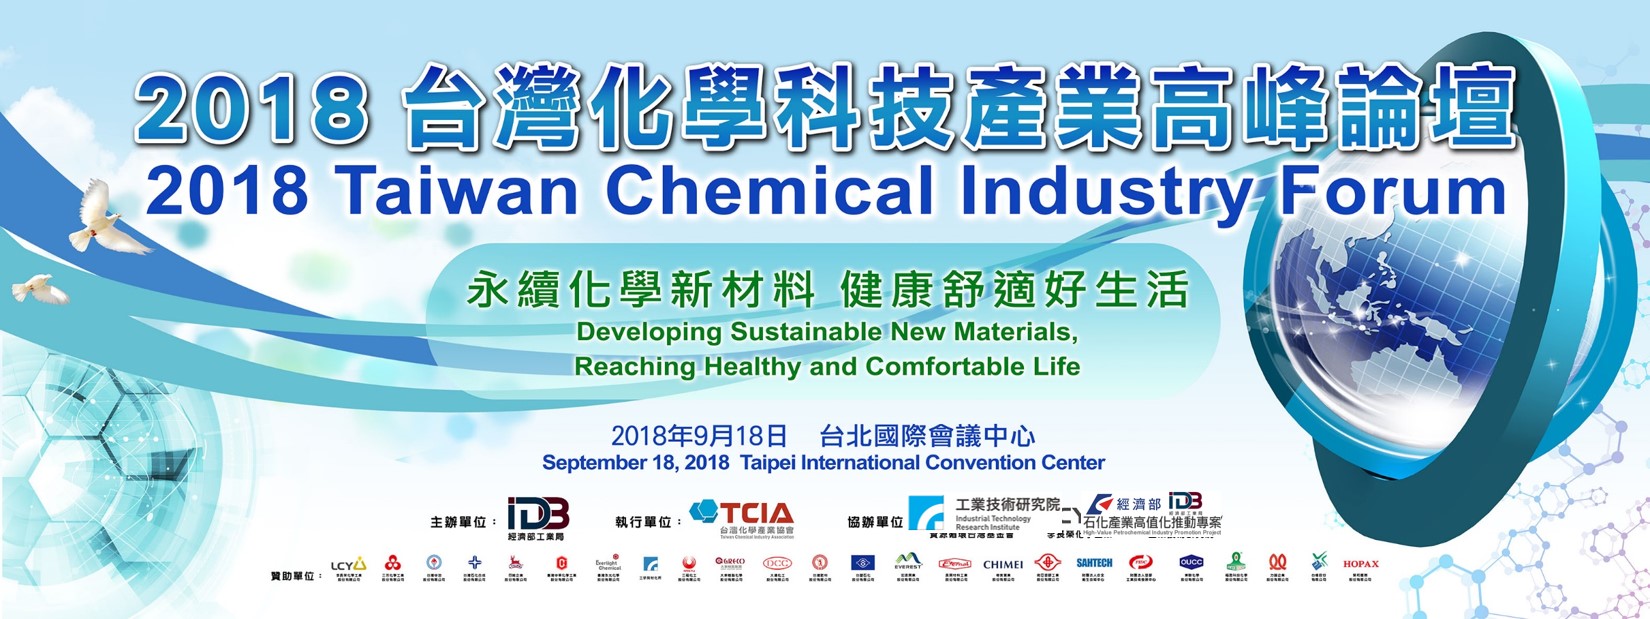 【論壇】2018年台灣化學科技產業高峰論壇(2018/9/18)